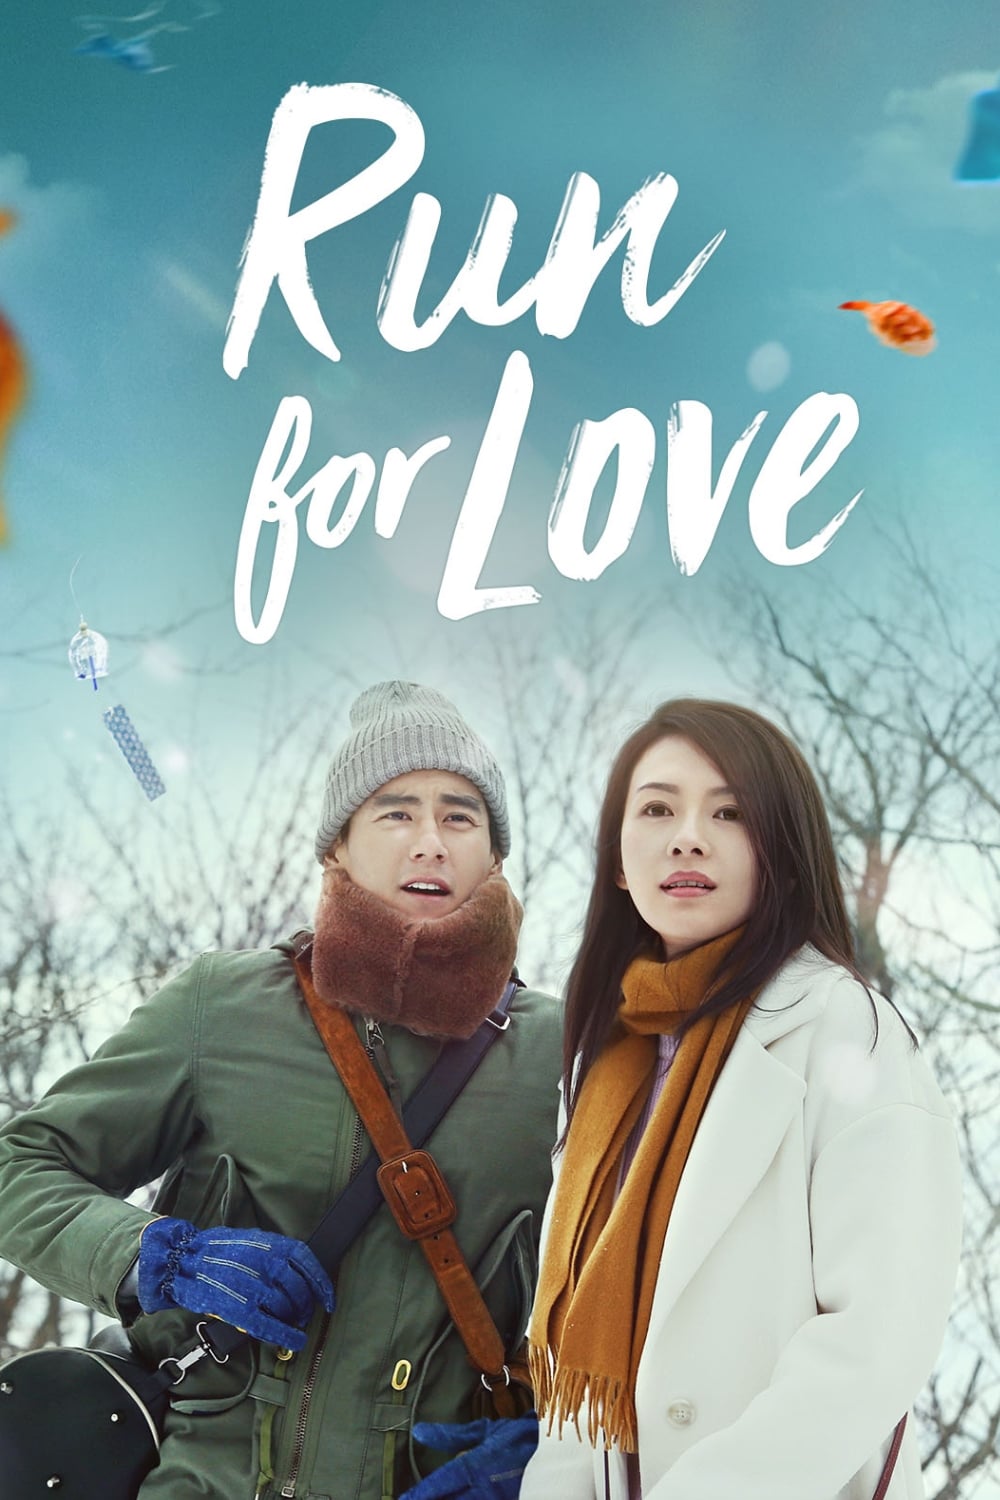 Run for Love (2016)